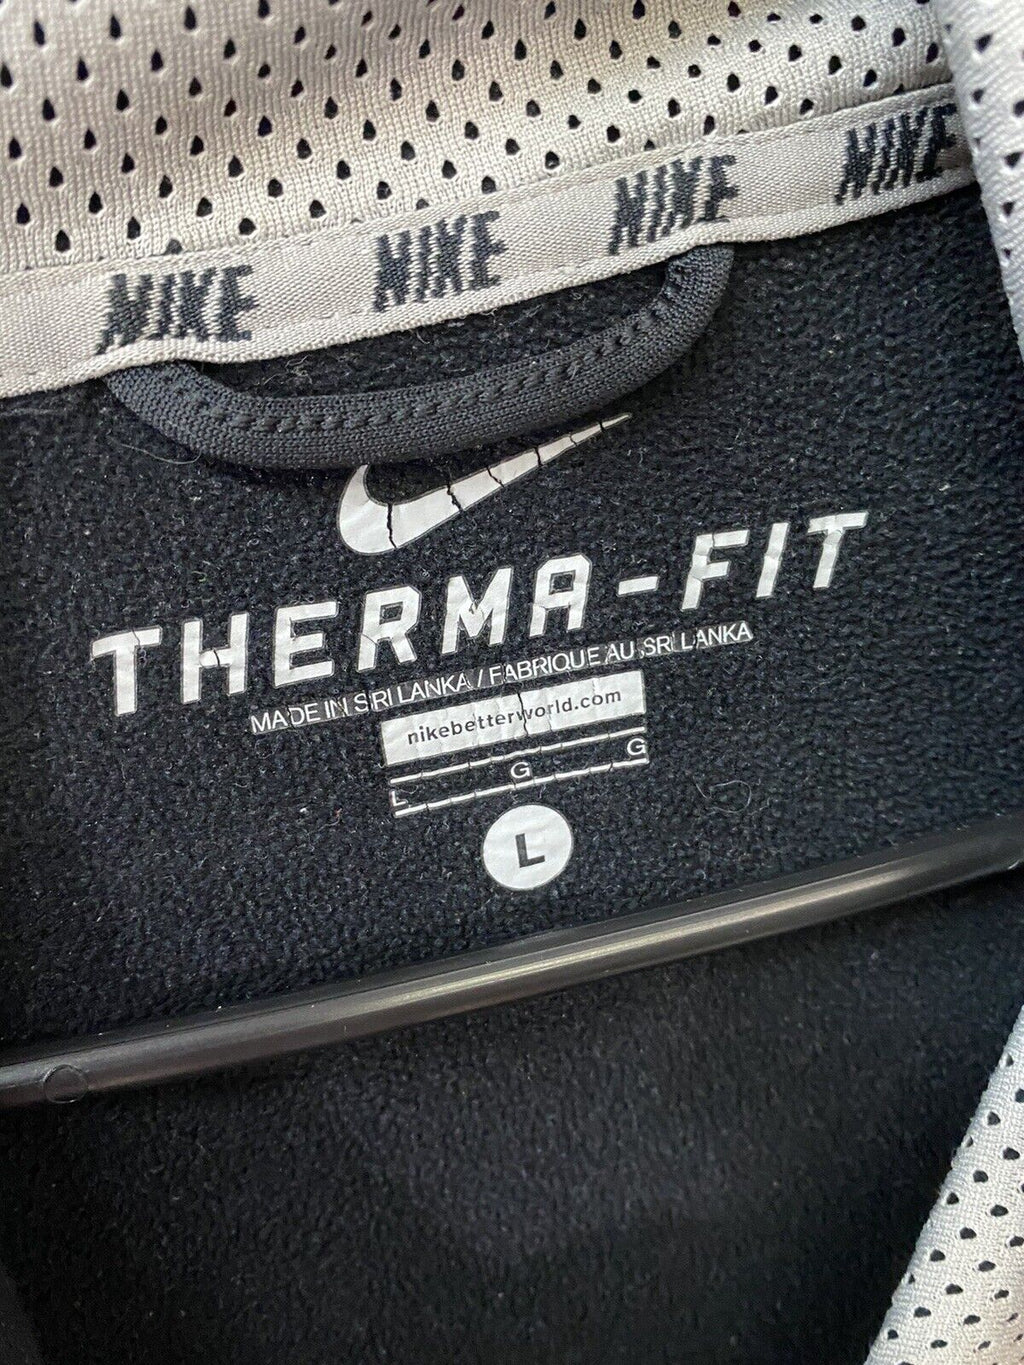 Nike Therma Fit Men's Black Gray Hoodie Swoosh Sz Large - Hype Stew Sneakers Detroit